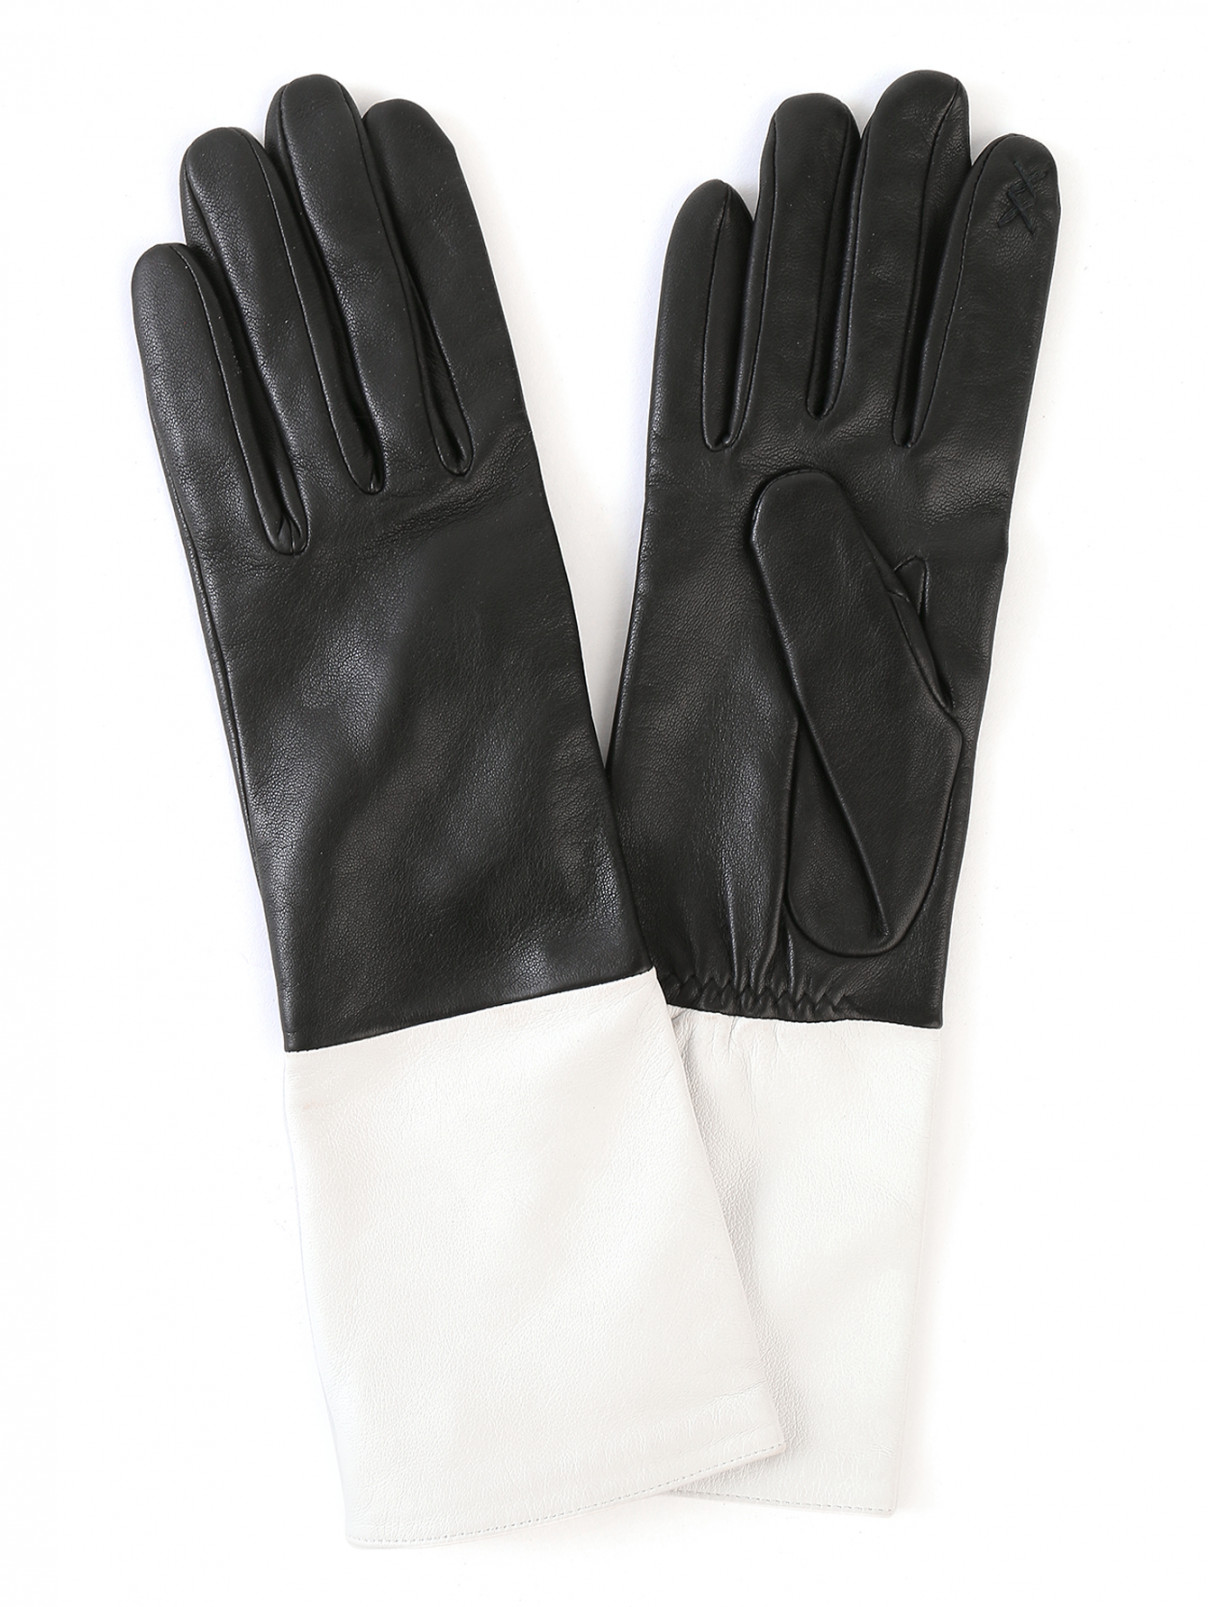 Перчатки из кожи с контрастной вставкой Kenzo  –  Общий вид  – Цвет:  Черный